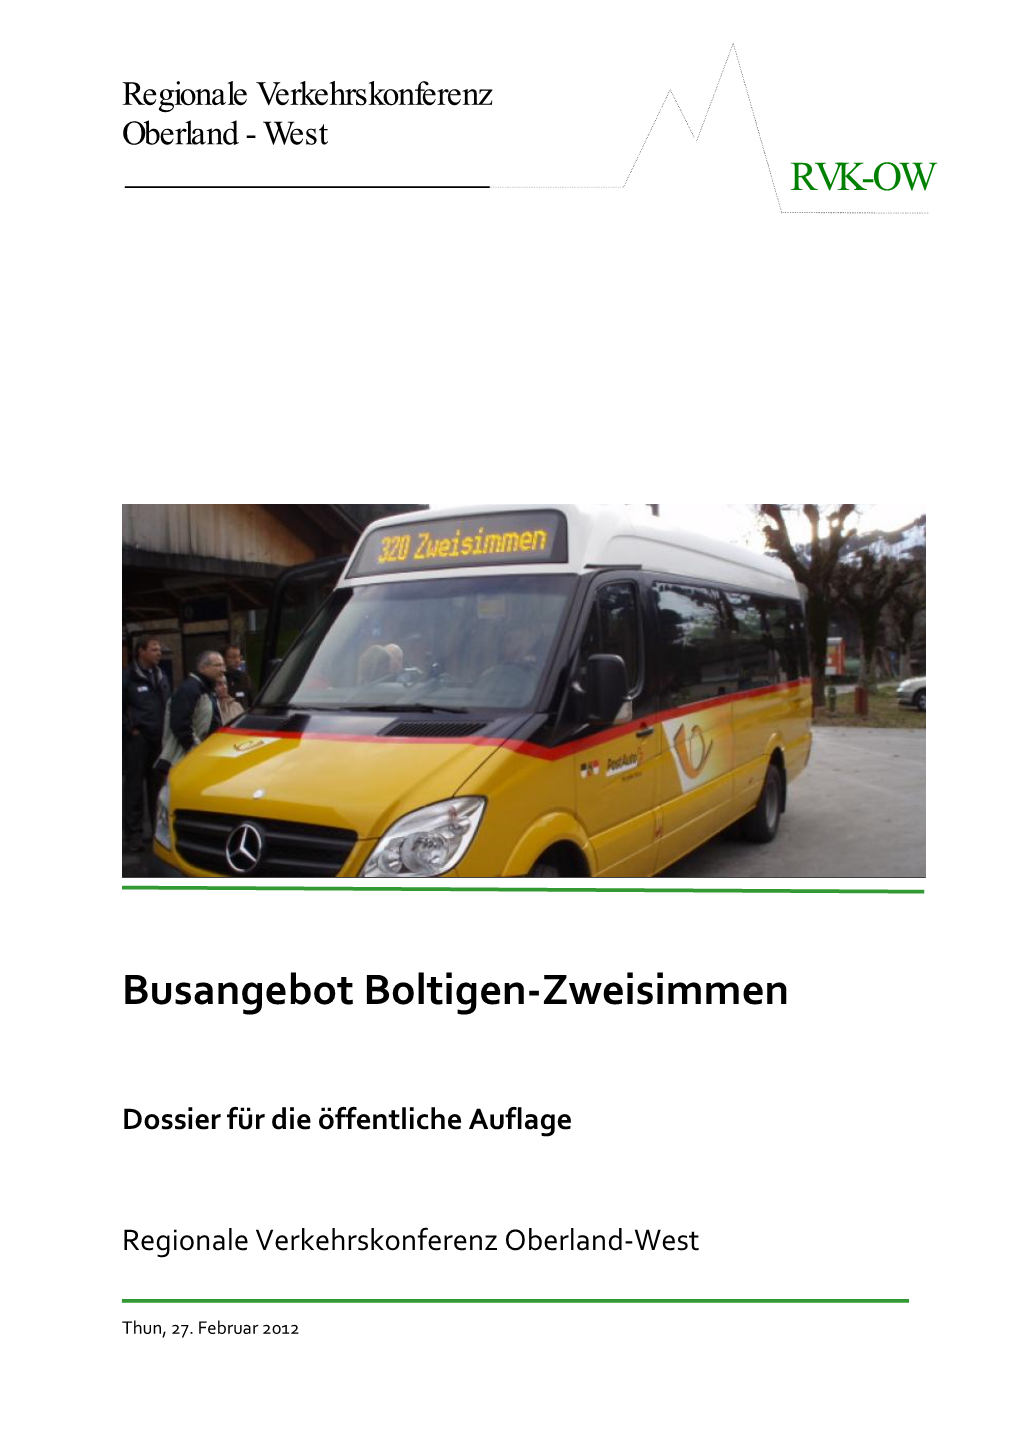 Busangebot Boltigen-Zweisimmen